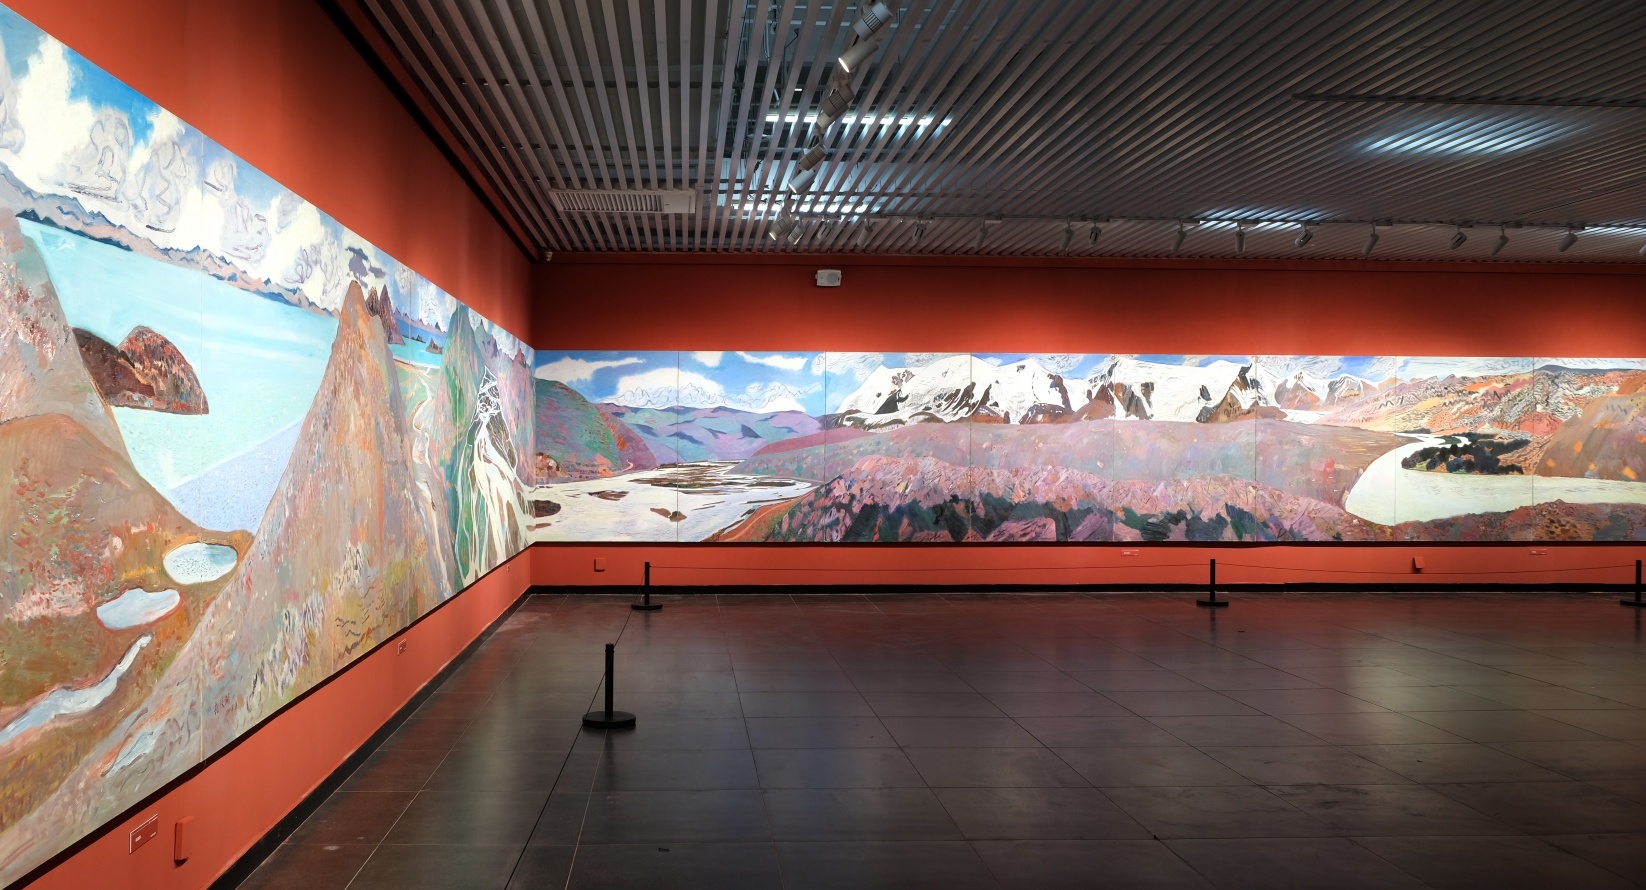 著名画家王克举油画长卷《黄河》亮相长沙，呈现黄河流域生态之美